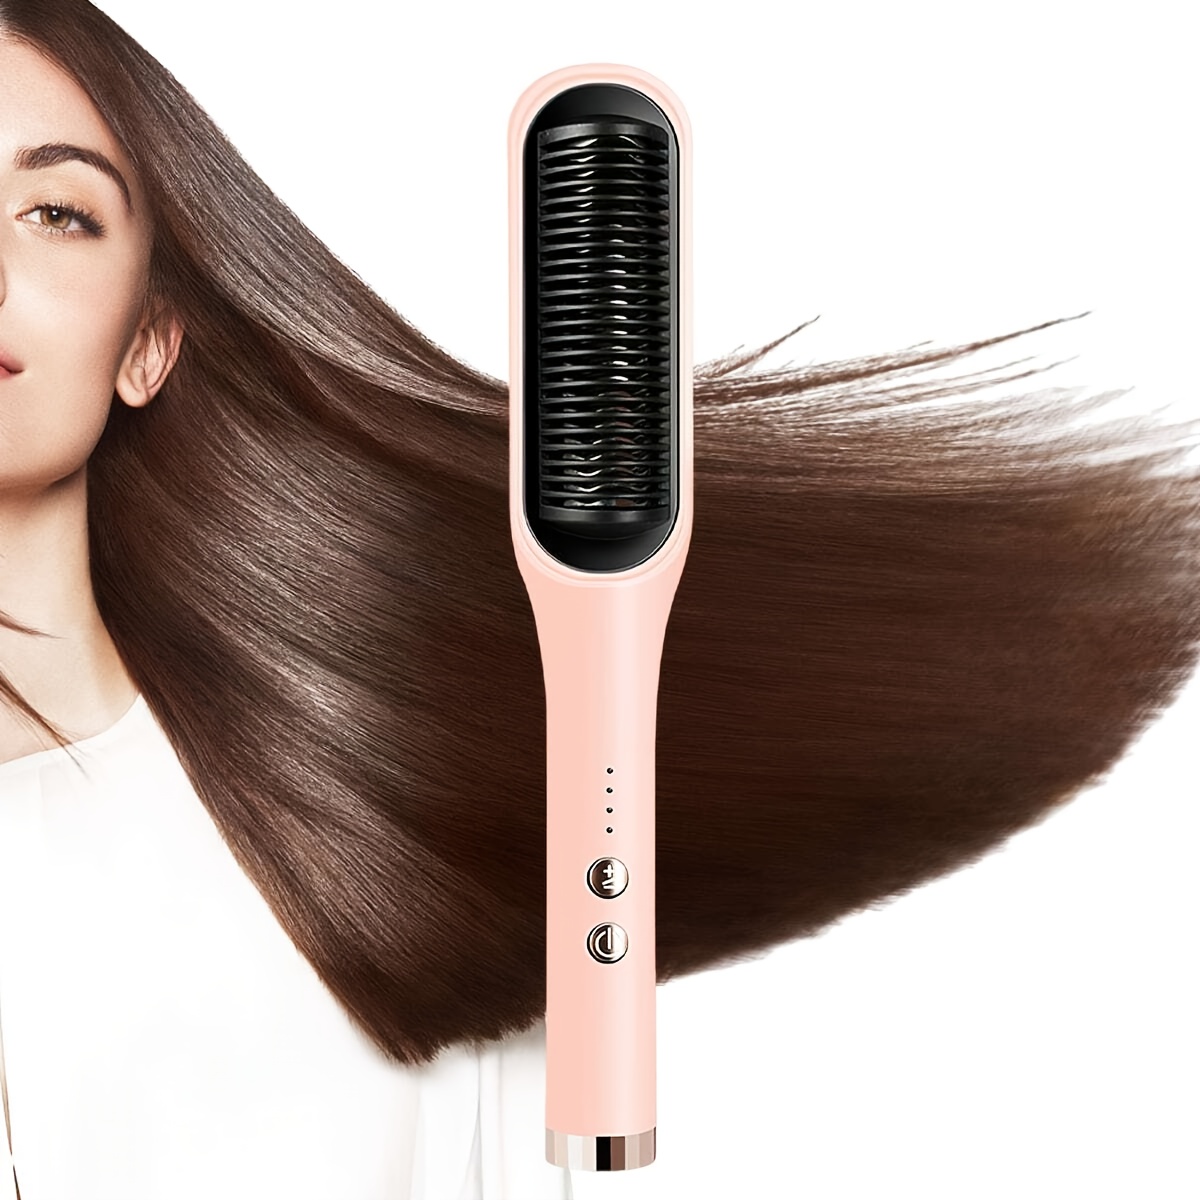 Cepillo alisador de cabello de 5 ajustes de temperatura, Cepillo iónico  alisador para cabello sedoso sin encrespamiento, resistente a la  temperatura